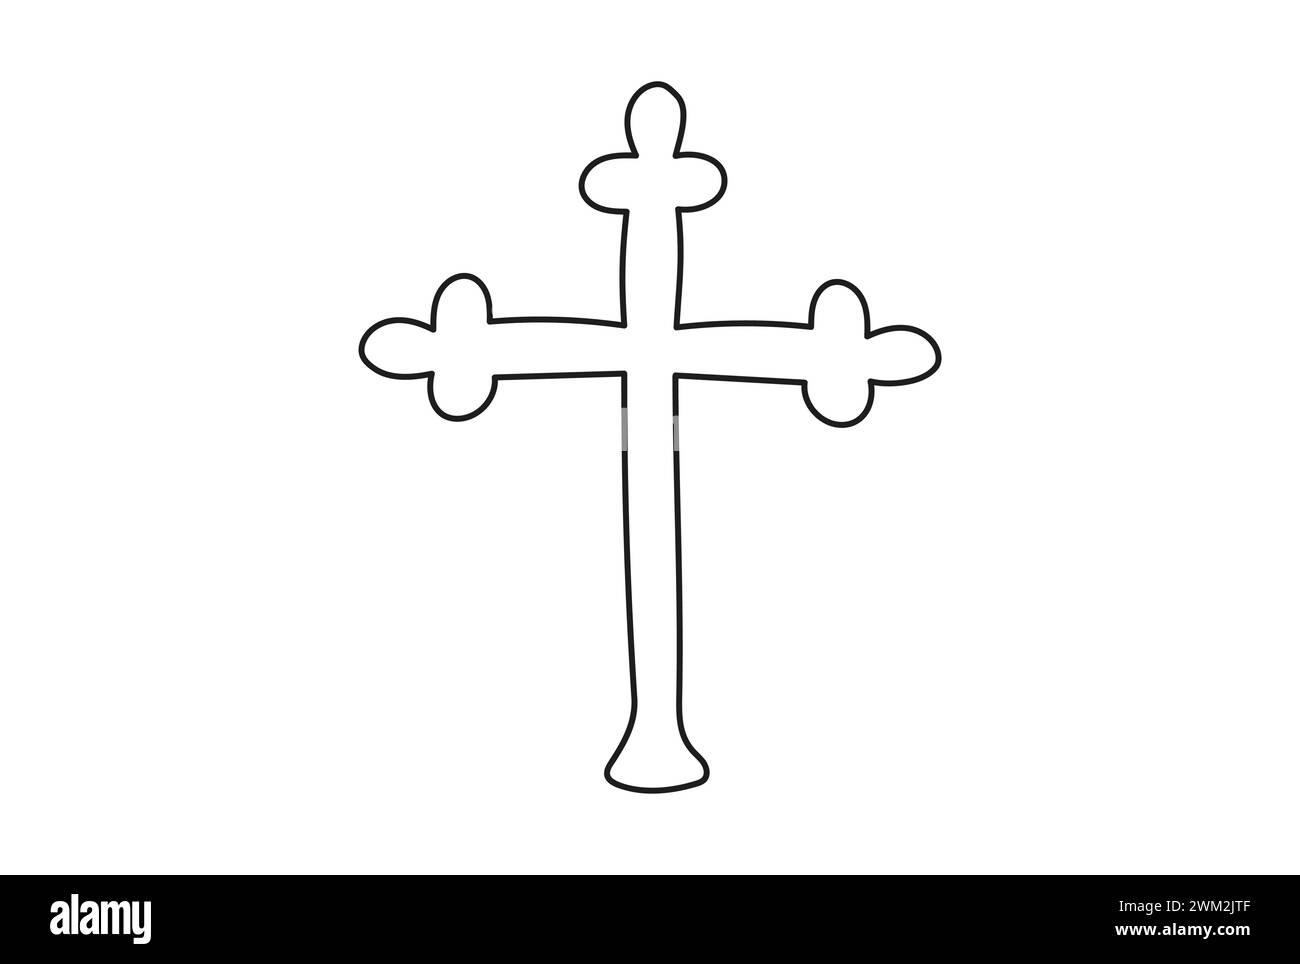 Durchgehende, einzeilige Zeichnung eines Kreuzes. Strichgrafik. Vorstellung von Ostern, glaube, Spiritualität, Religion, Beerdigung. Konstruktionselement. Schwarzweiß-Vektor isoliert auf weißem Hintergrund Stock Vektor